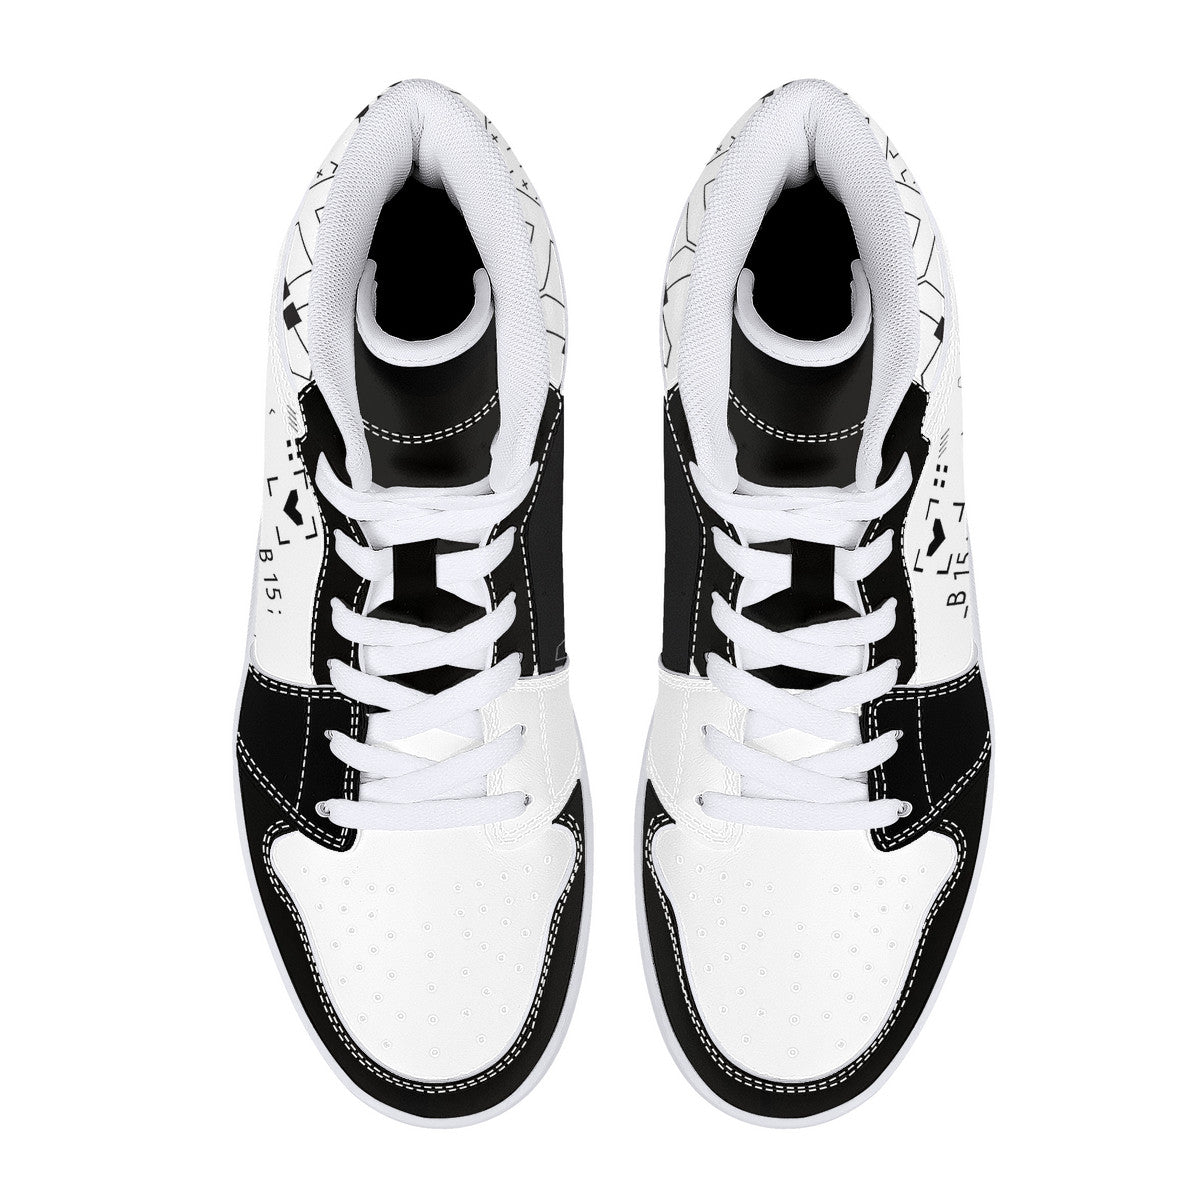 Cool shoes by Yuan A | High Top Customized | Shoe Zero